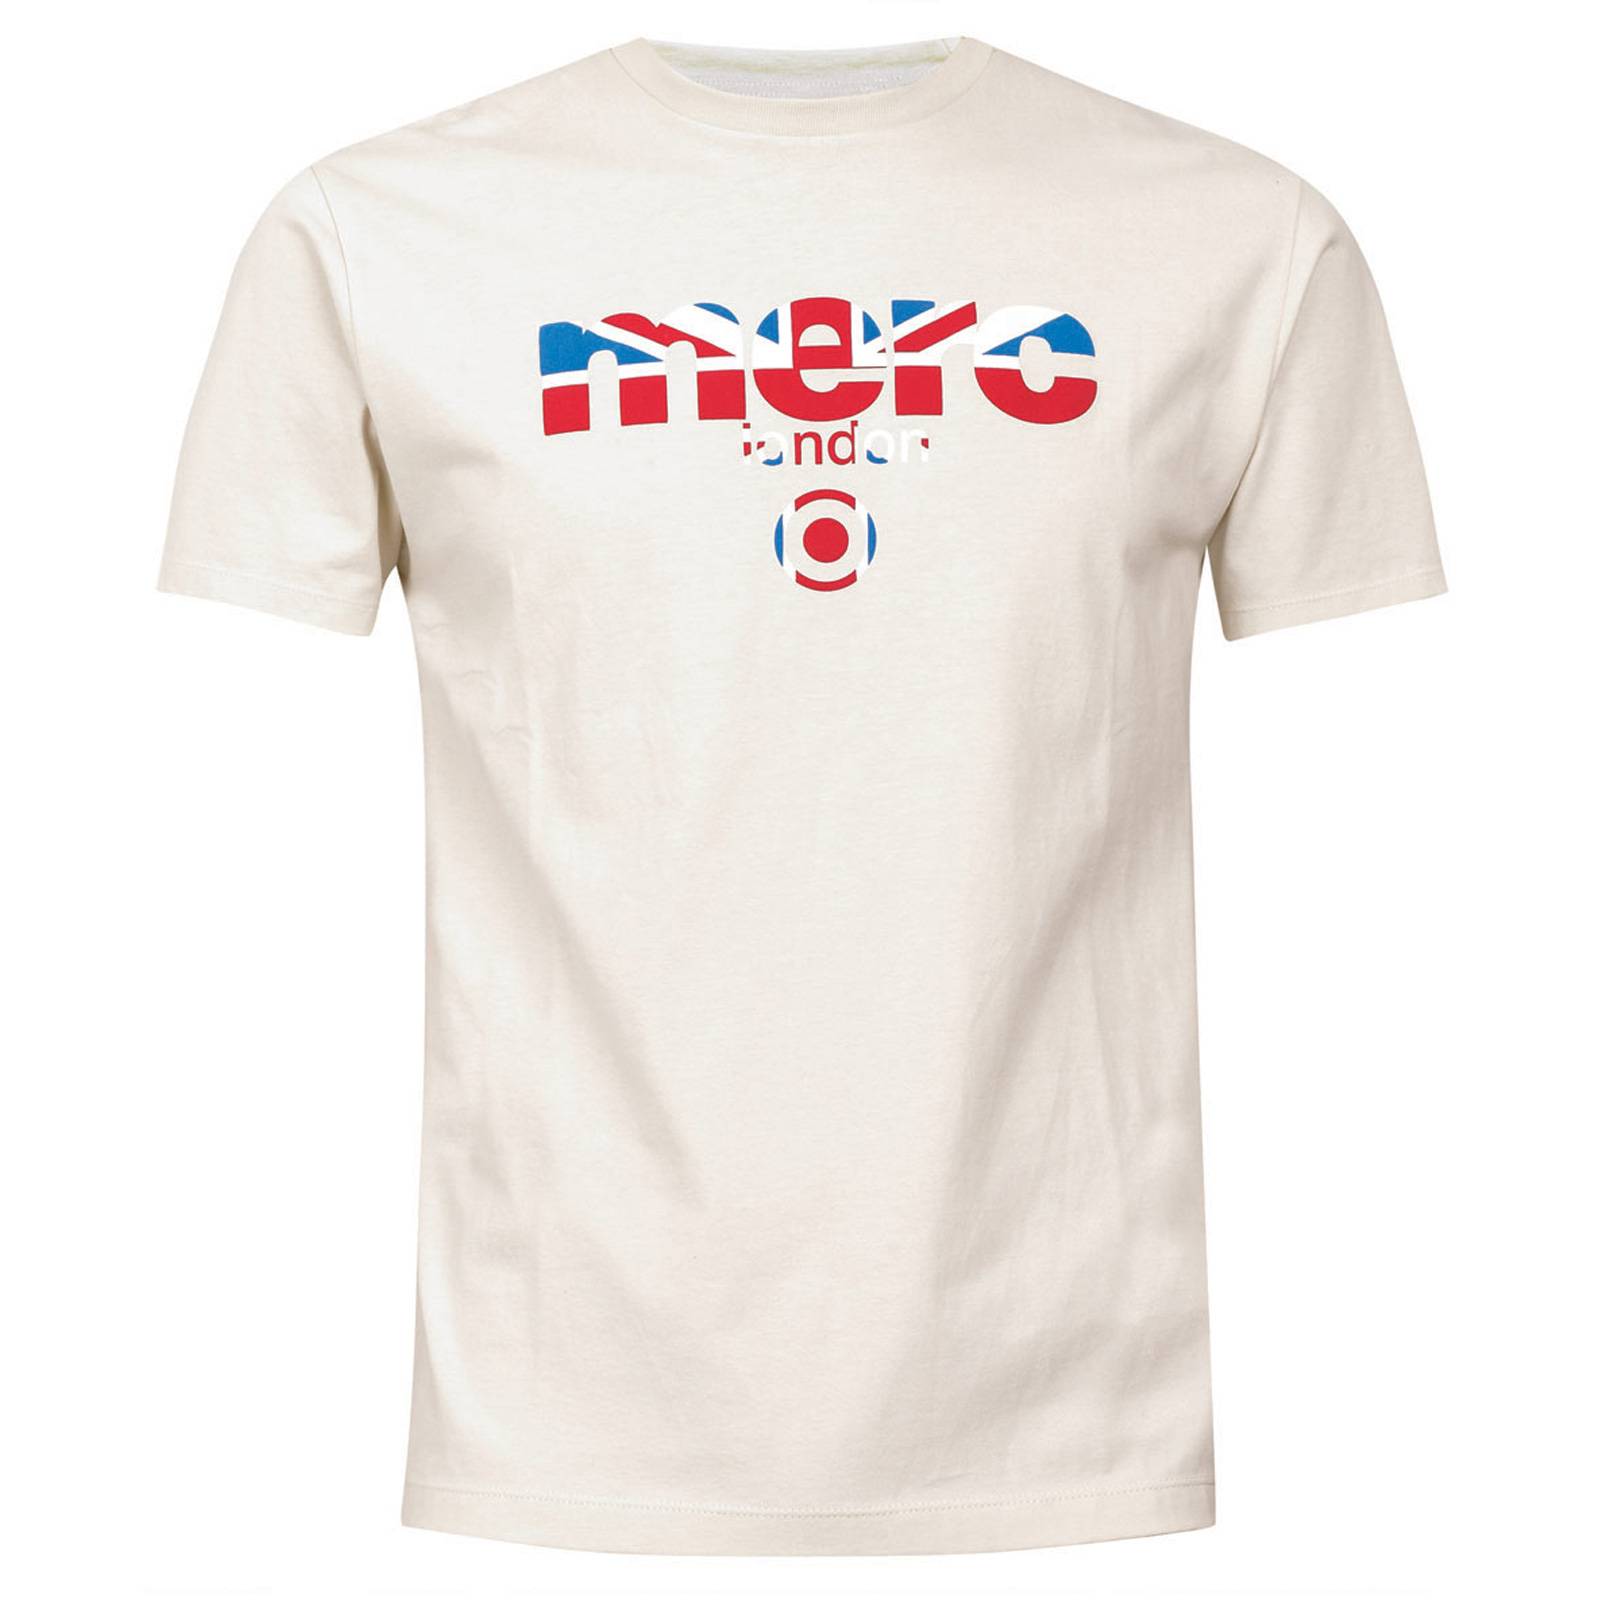 Мужская футболка Broadwell с классическим логотипом Merc, кремовая, купить на официальном сайте со СКИДКОЙ!